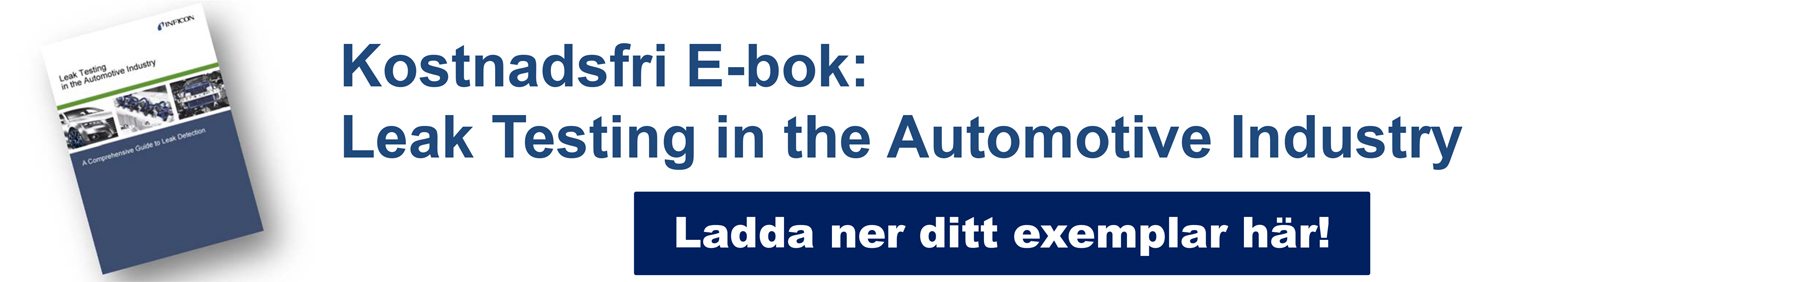 Kostnadsfri E-bok: Leak Testing in the Automotive Industry. Ladda ner ditt exemplar här!